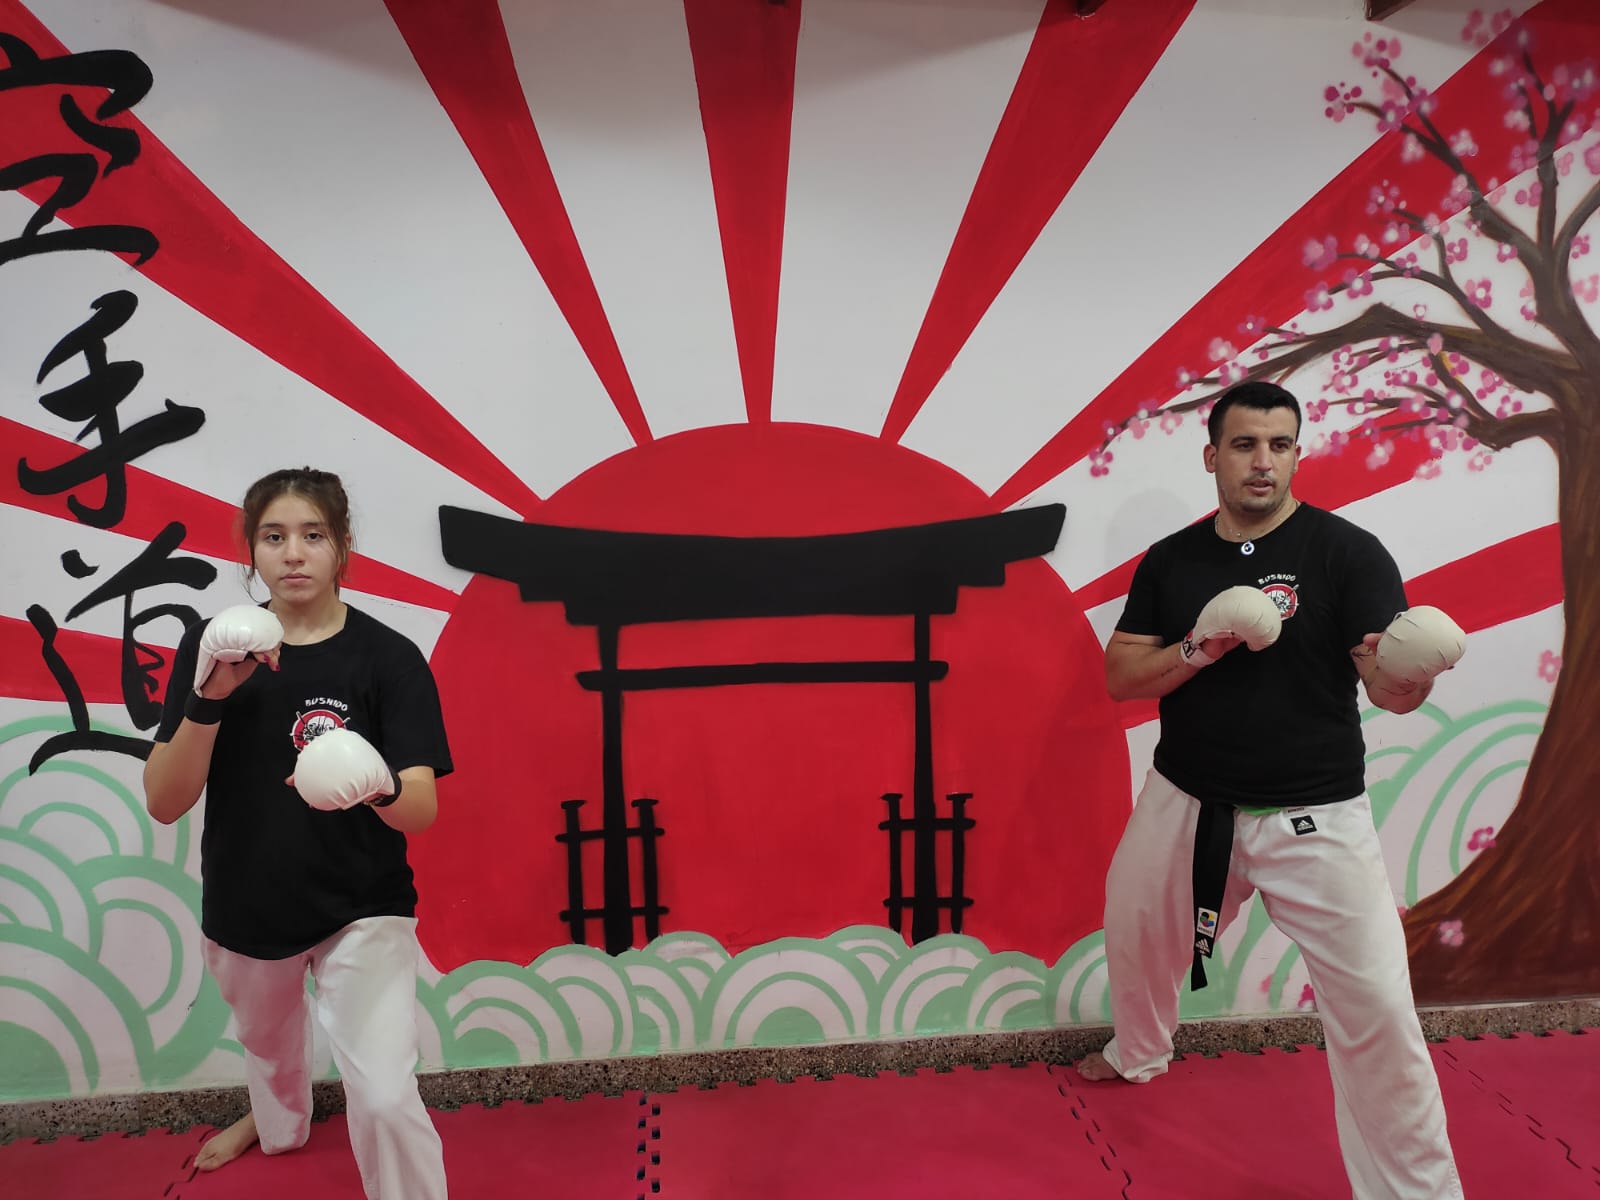 Tres funenses representarán a la ciudad en el Mundial de Karate 